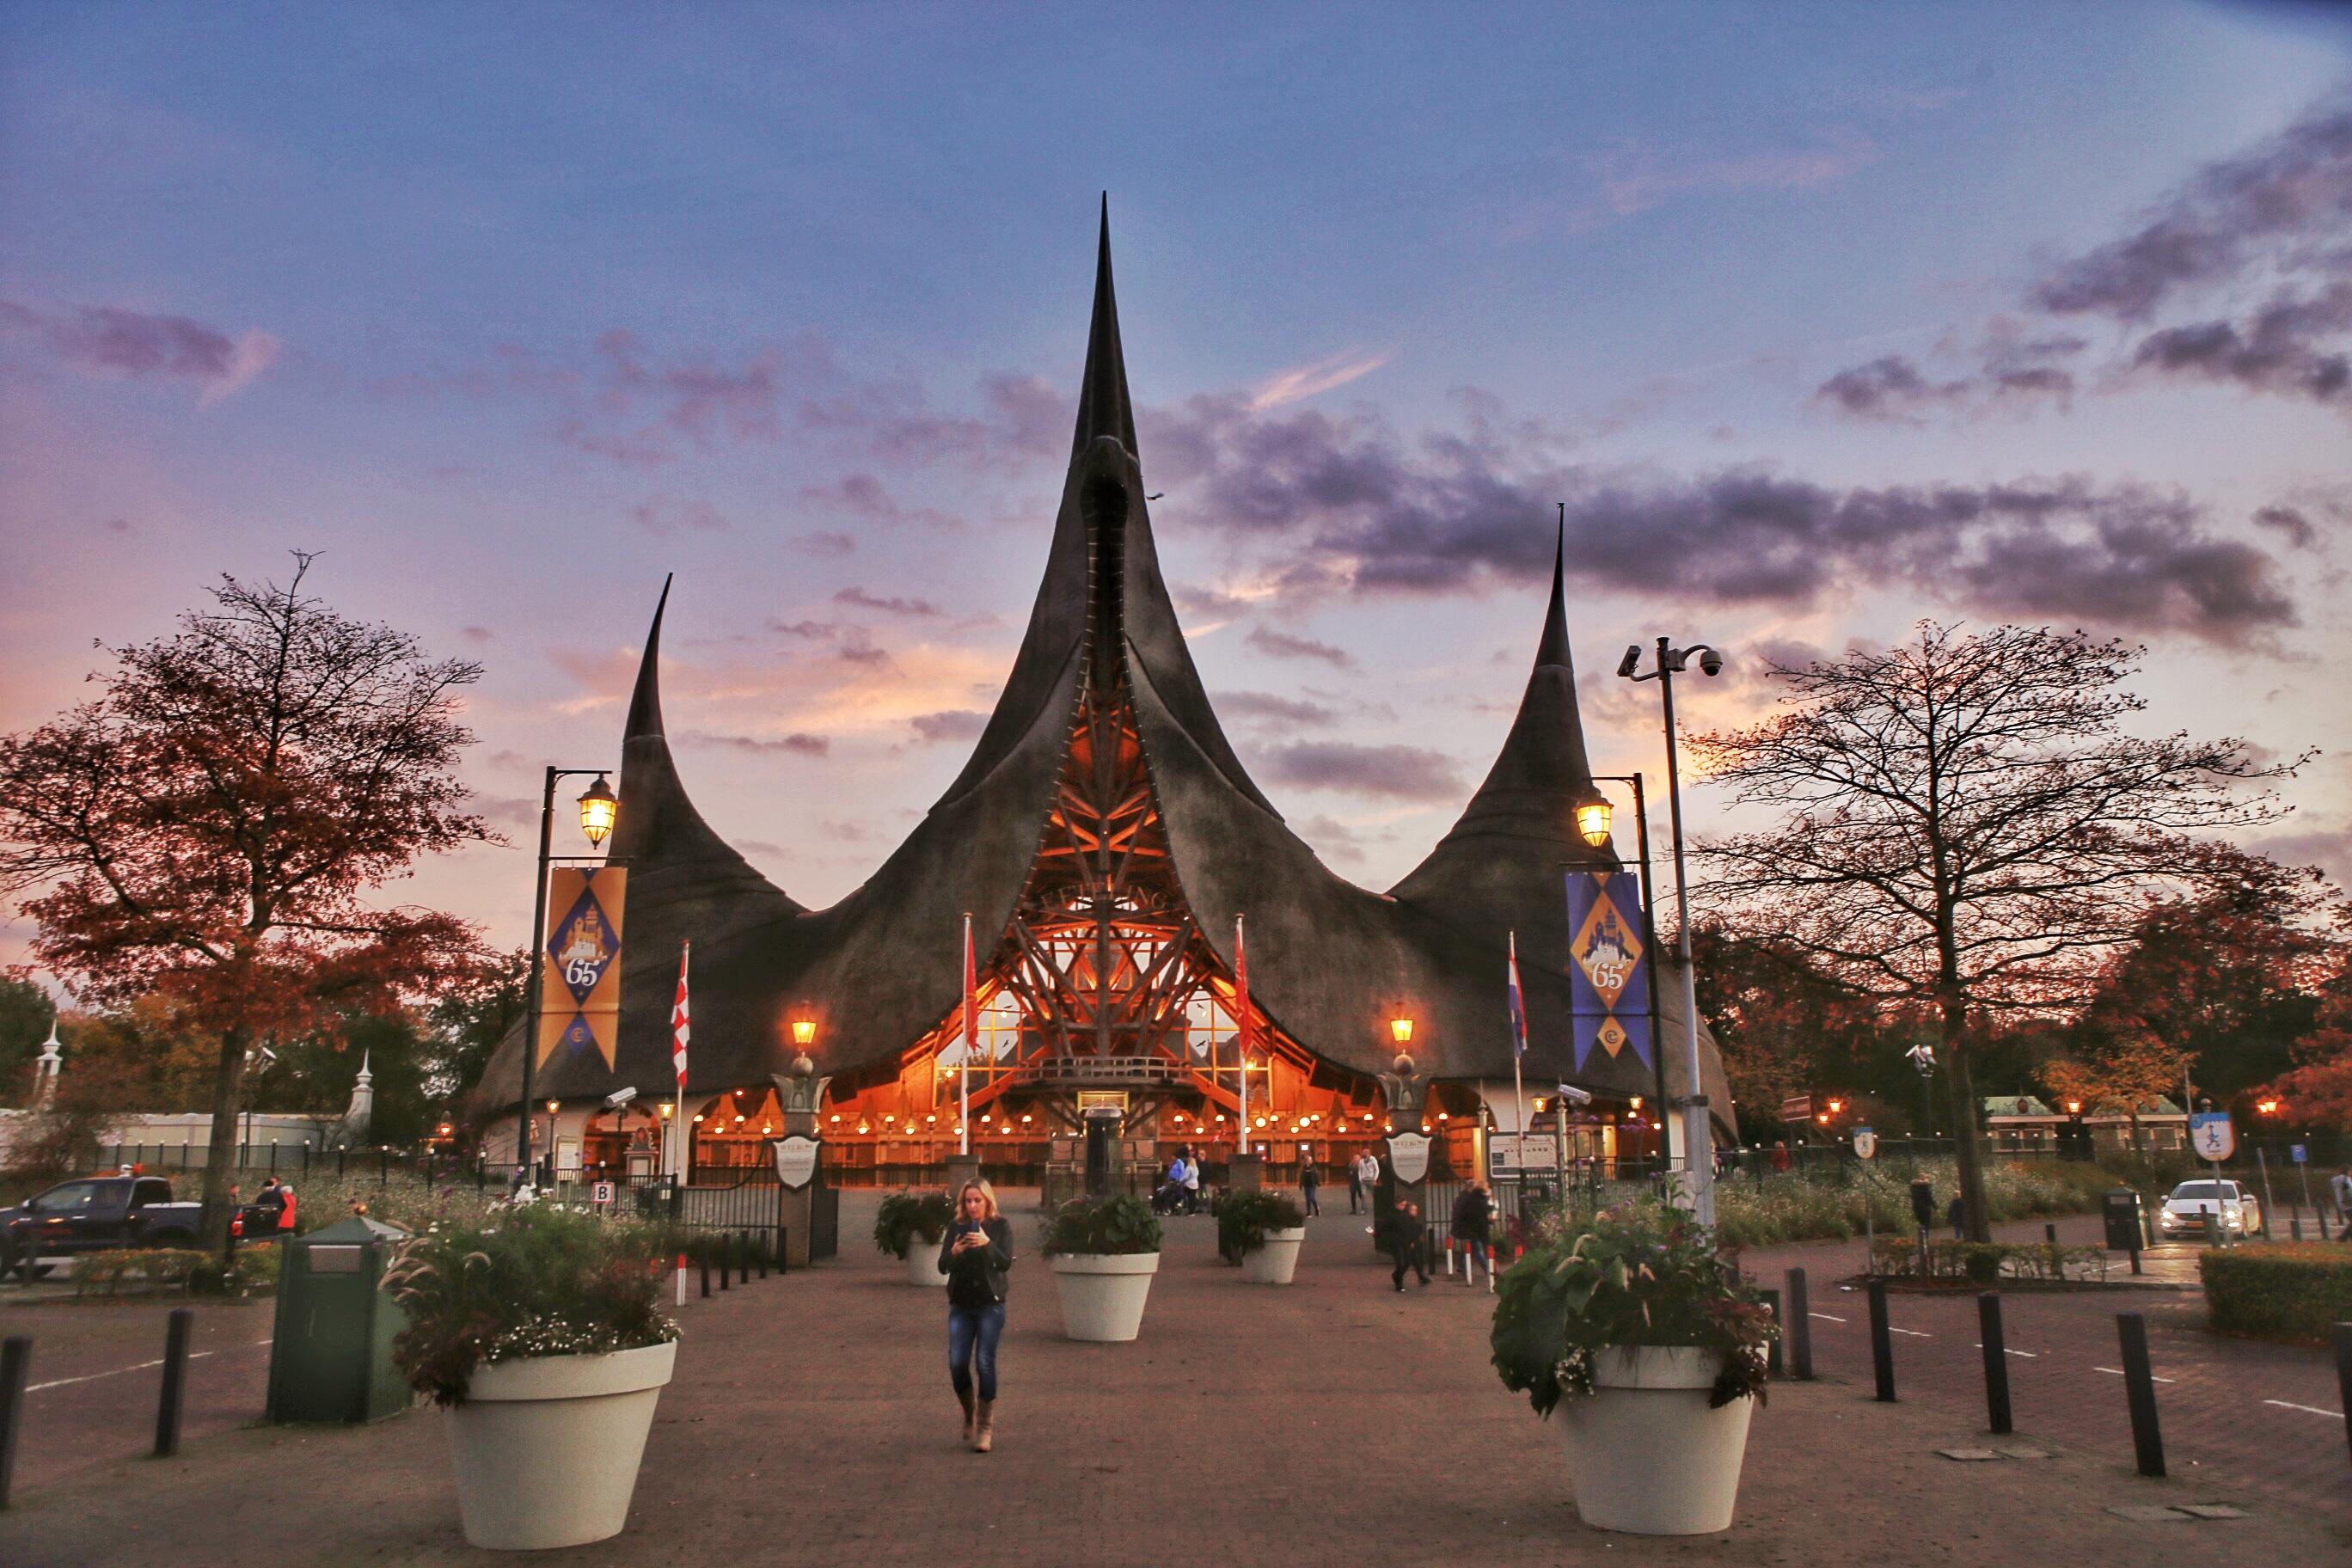 1/13来到荷兰最大的游乐园艾芙琳梦幻世界,比起迪士尼和环球影城,这里